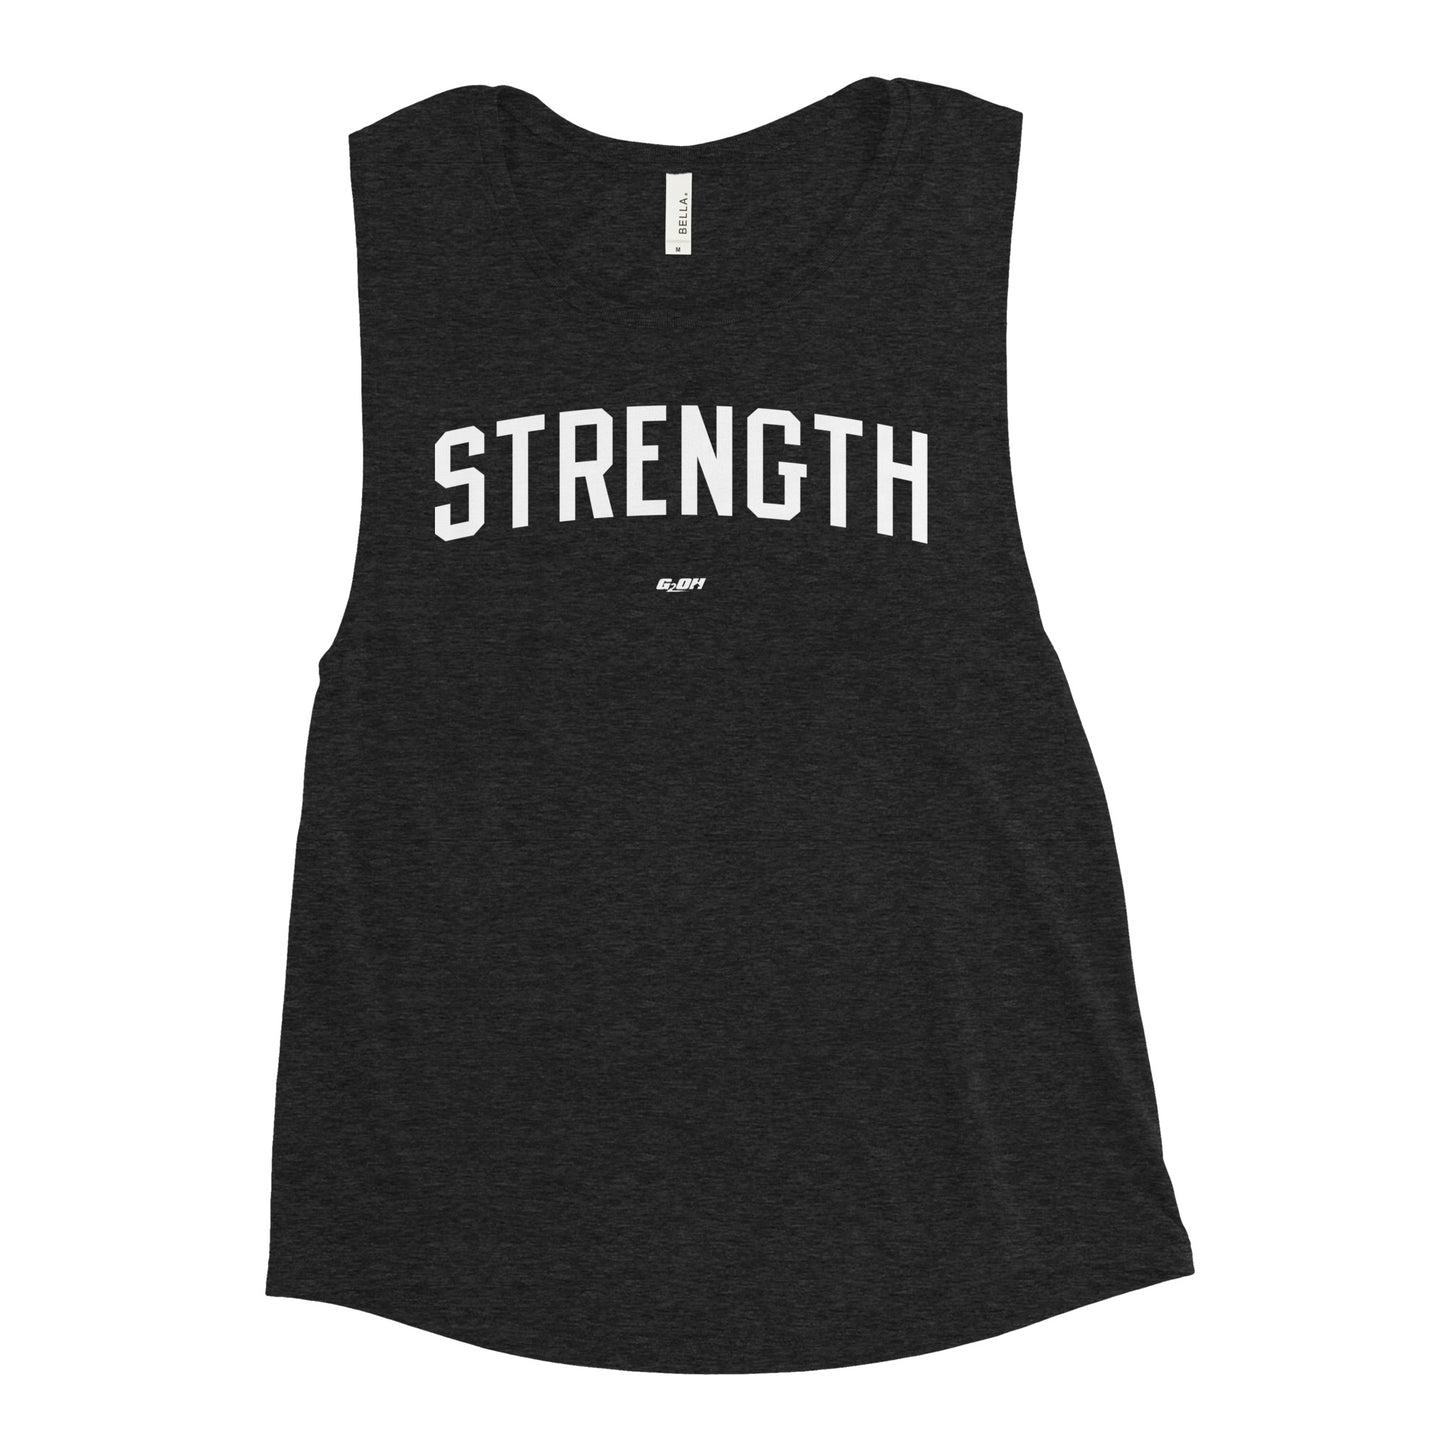 Strength Women's Muscle Tank